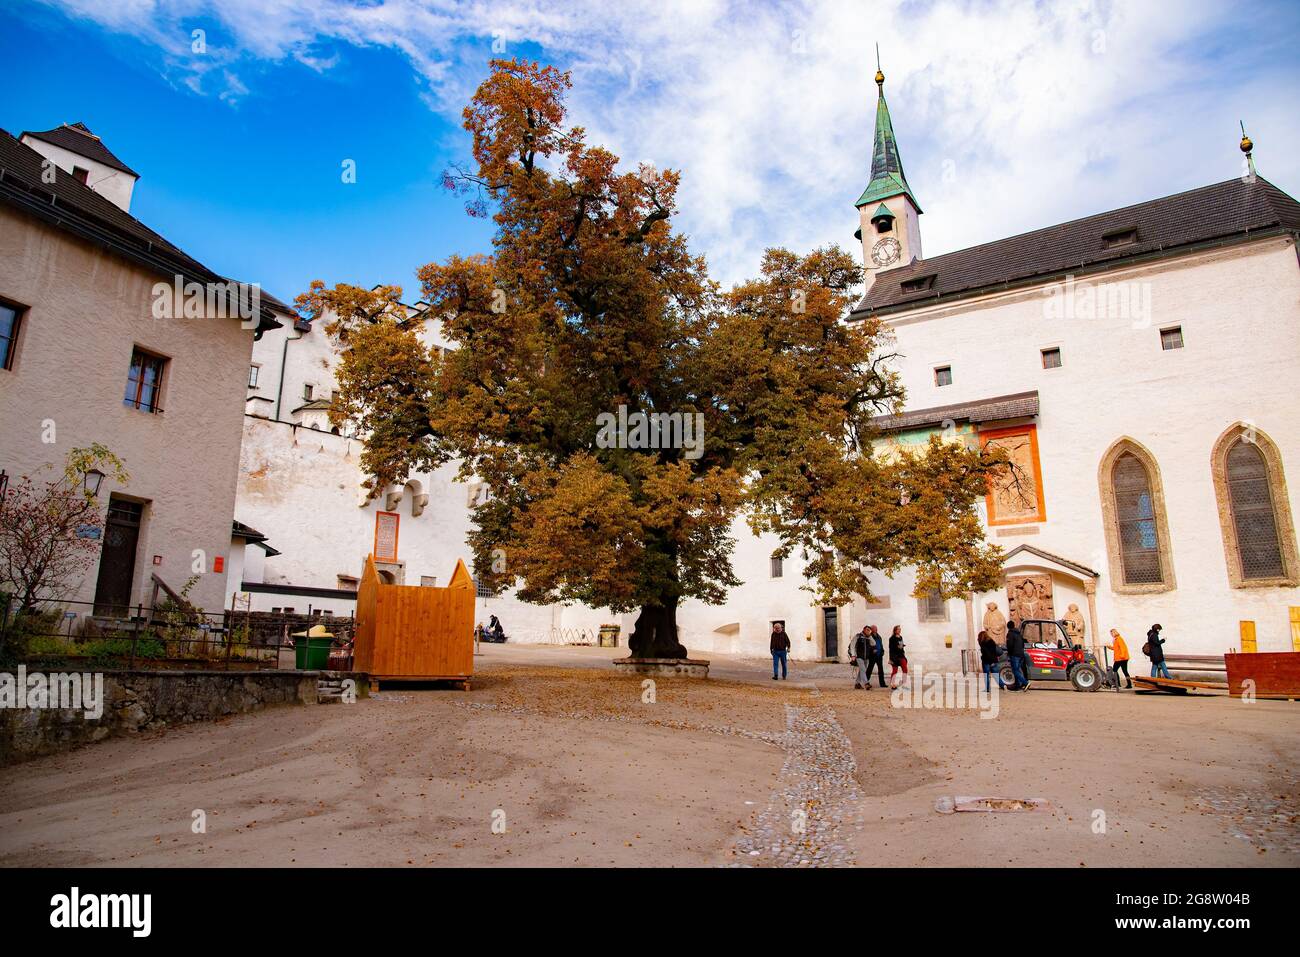 St Georgs Kirche nel cortile della fotress di Festung Hohensalzburg. Preso a Salisburgo, Austria, 20 ottobre 2016 Foto Stock